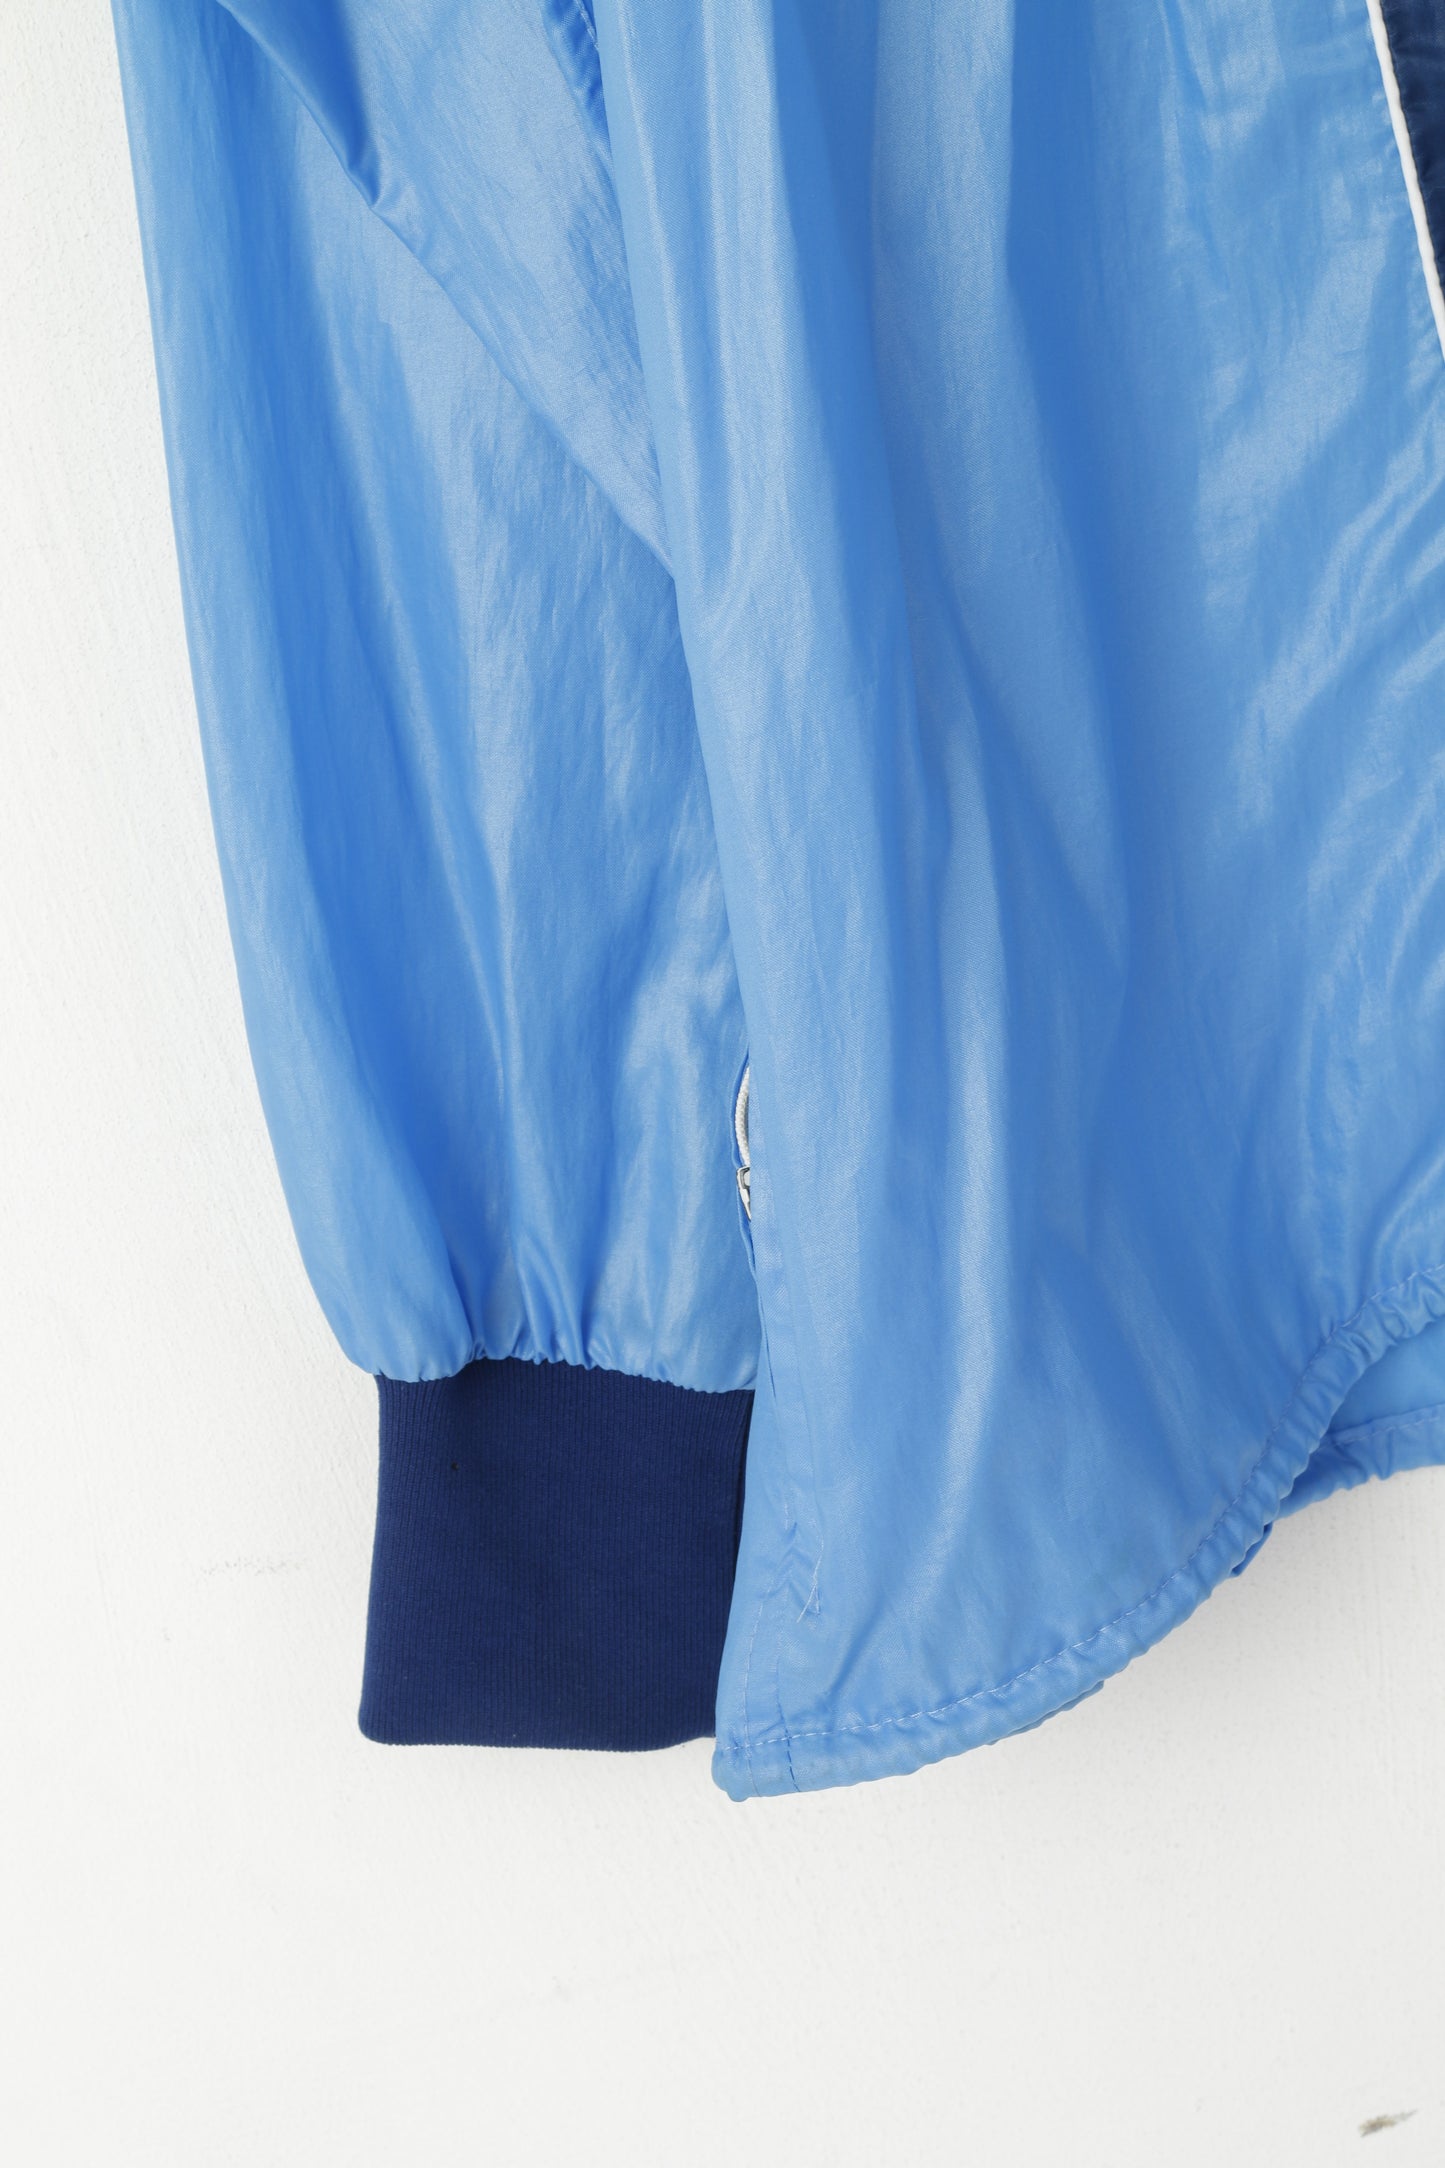 New Line Men  XL Jacket Blue Nylon Denmark Sportswear Full Zip Lightweight Top